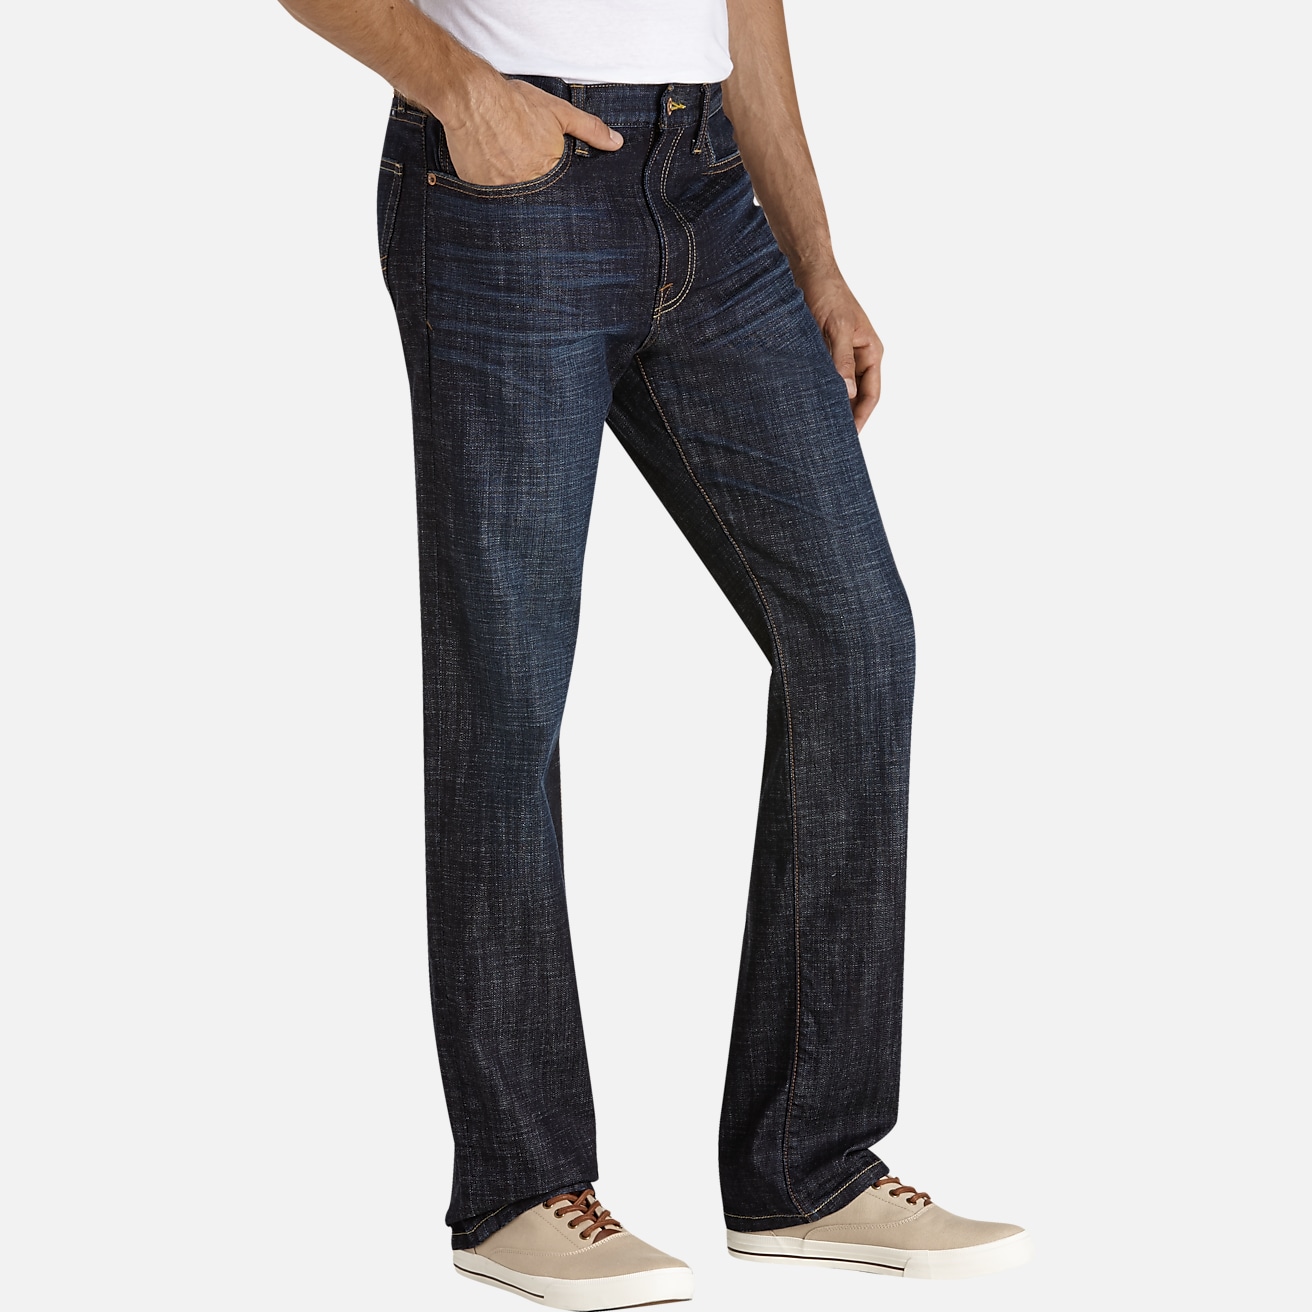 Lucky Brand Straight Leg Jeans Men's Size 38 100% Cotton Dark Wash Denim